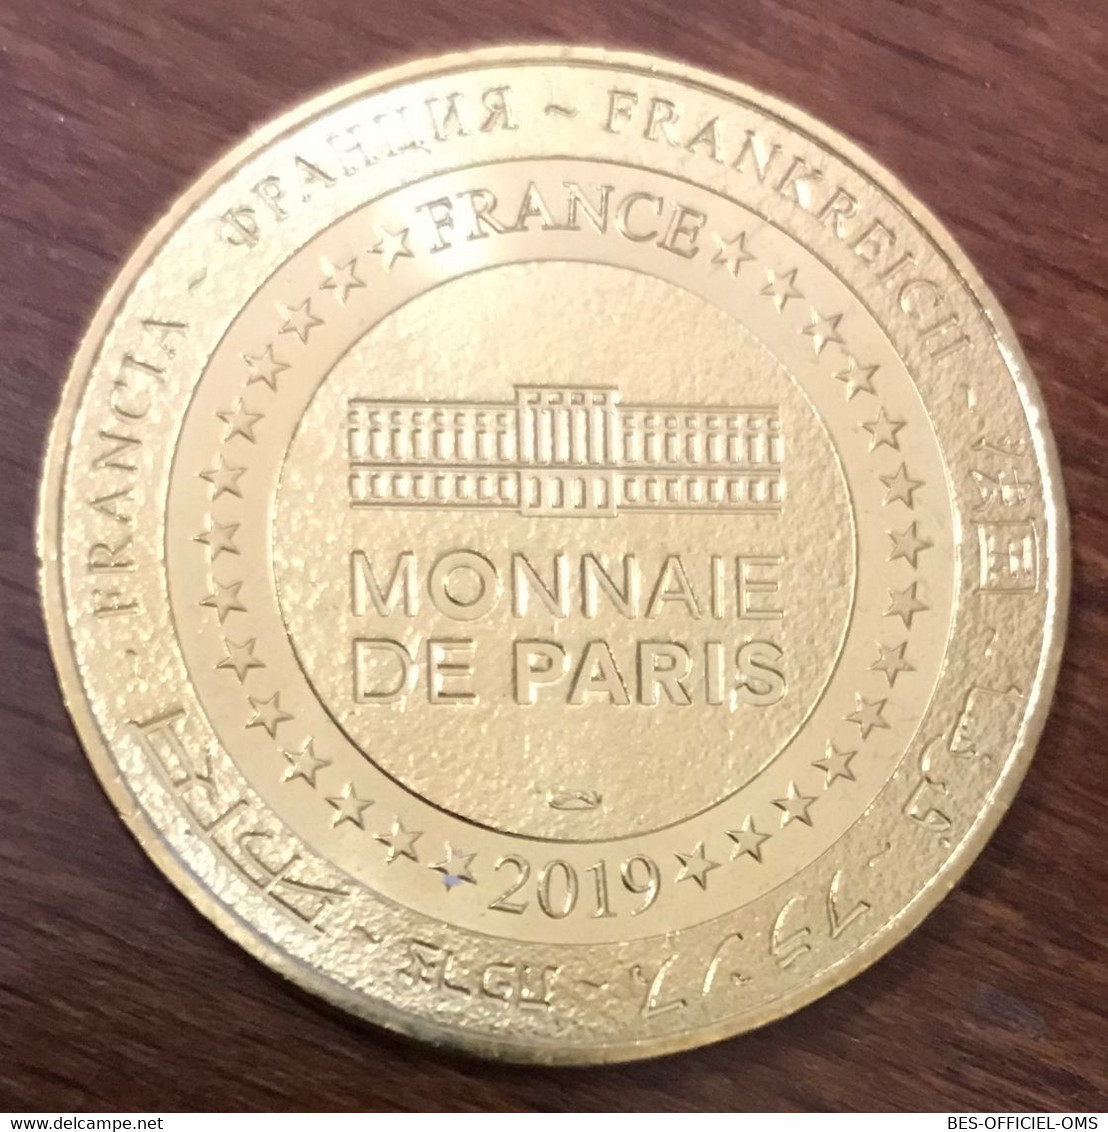 17 HIERS BROUAGE ÉTOILE DE PIERRE MDP 2019 MEDAILLE MONNAIE DE PARIS JETON TOURISTIQUE MEDALS COINS TOKENS - 2019